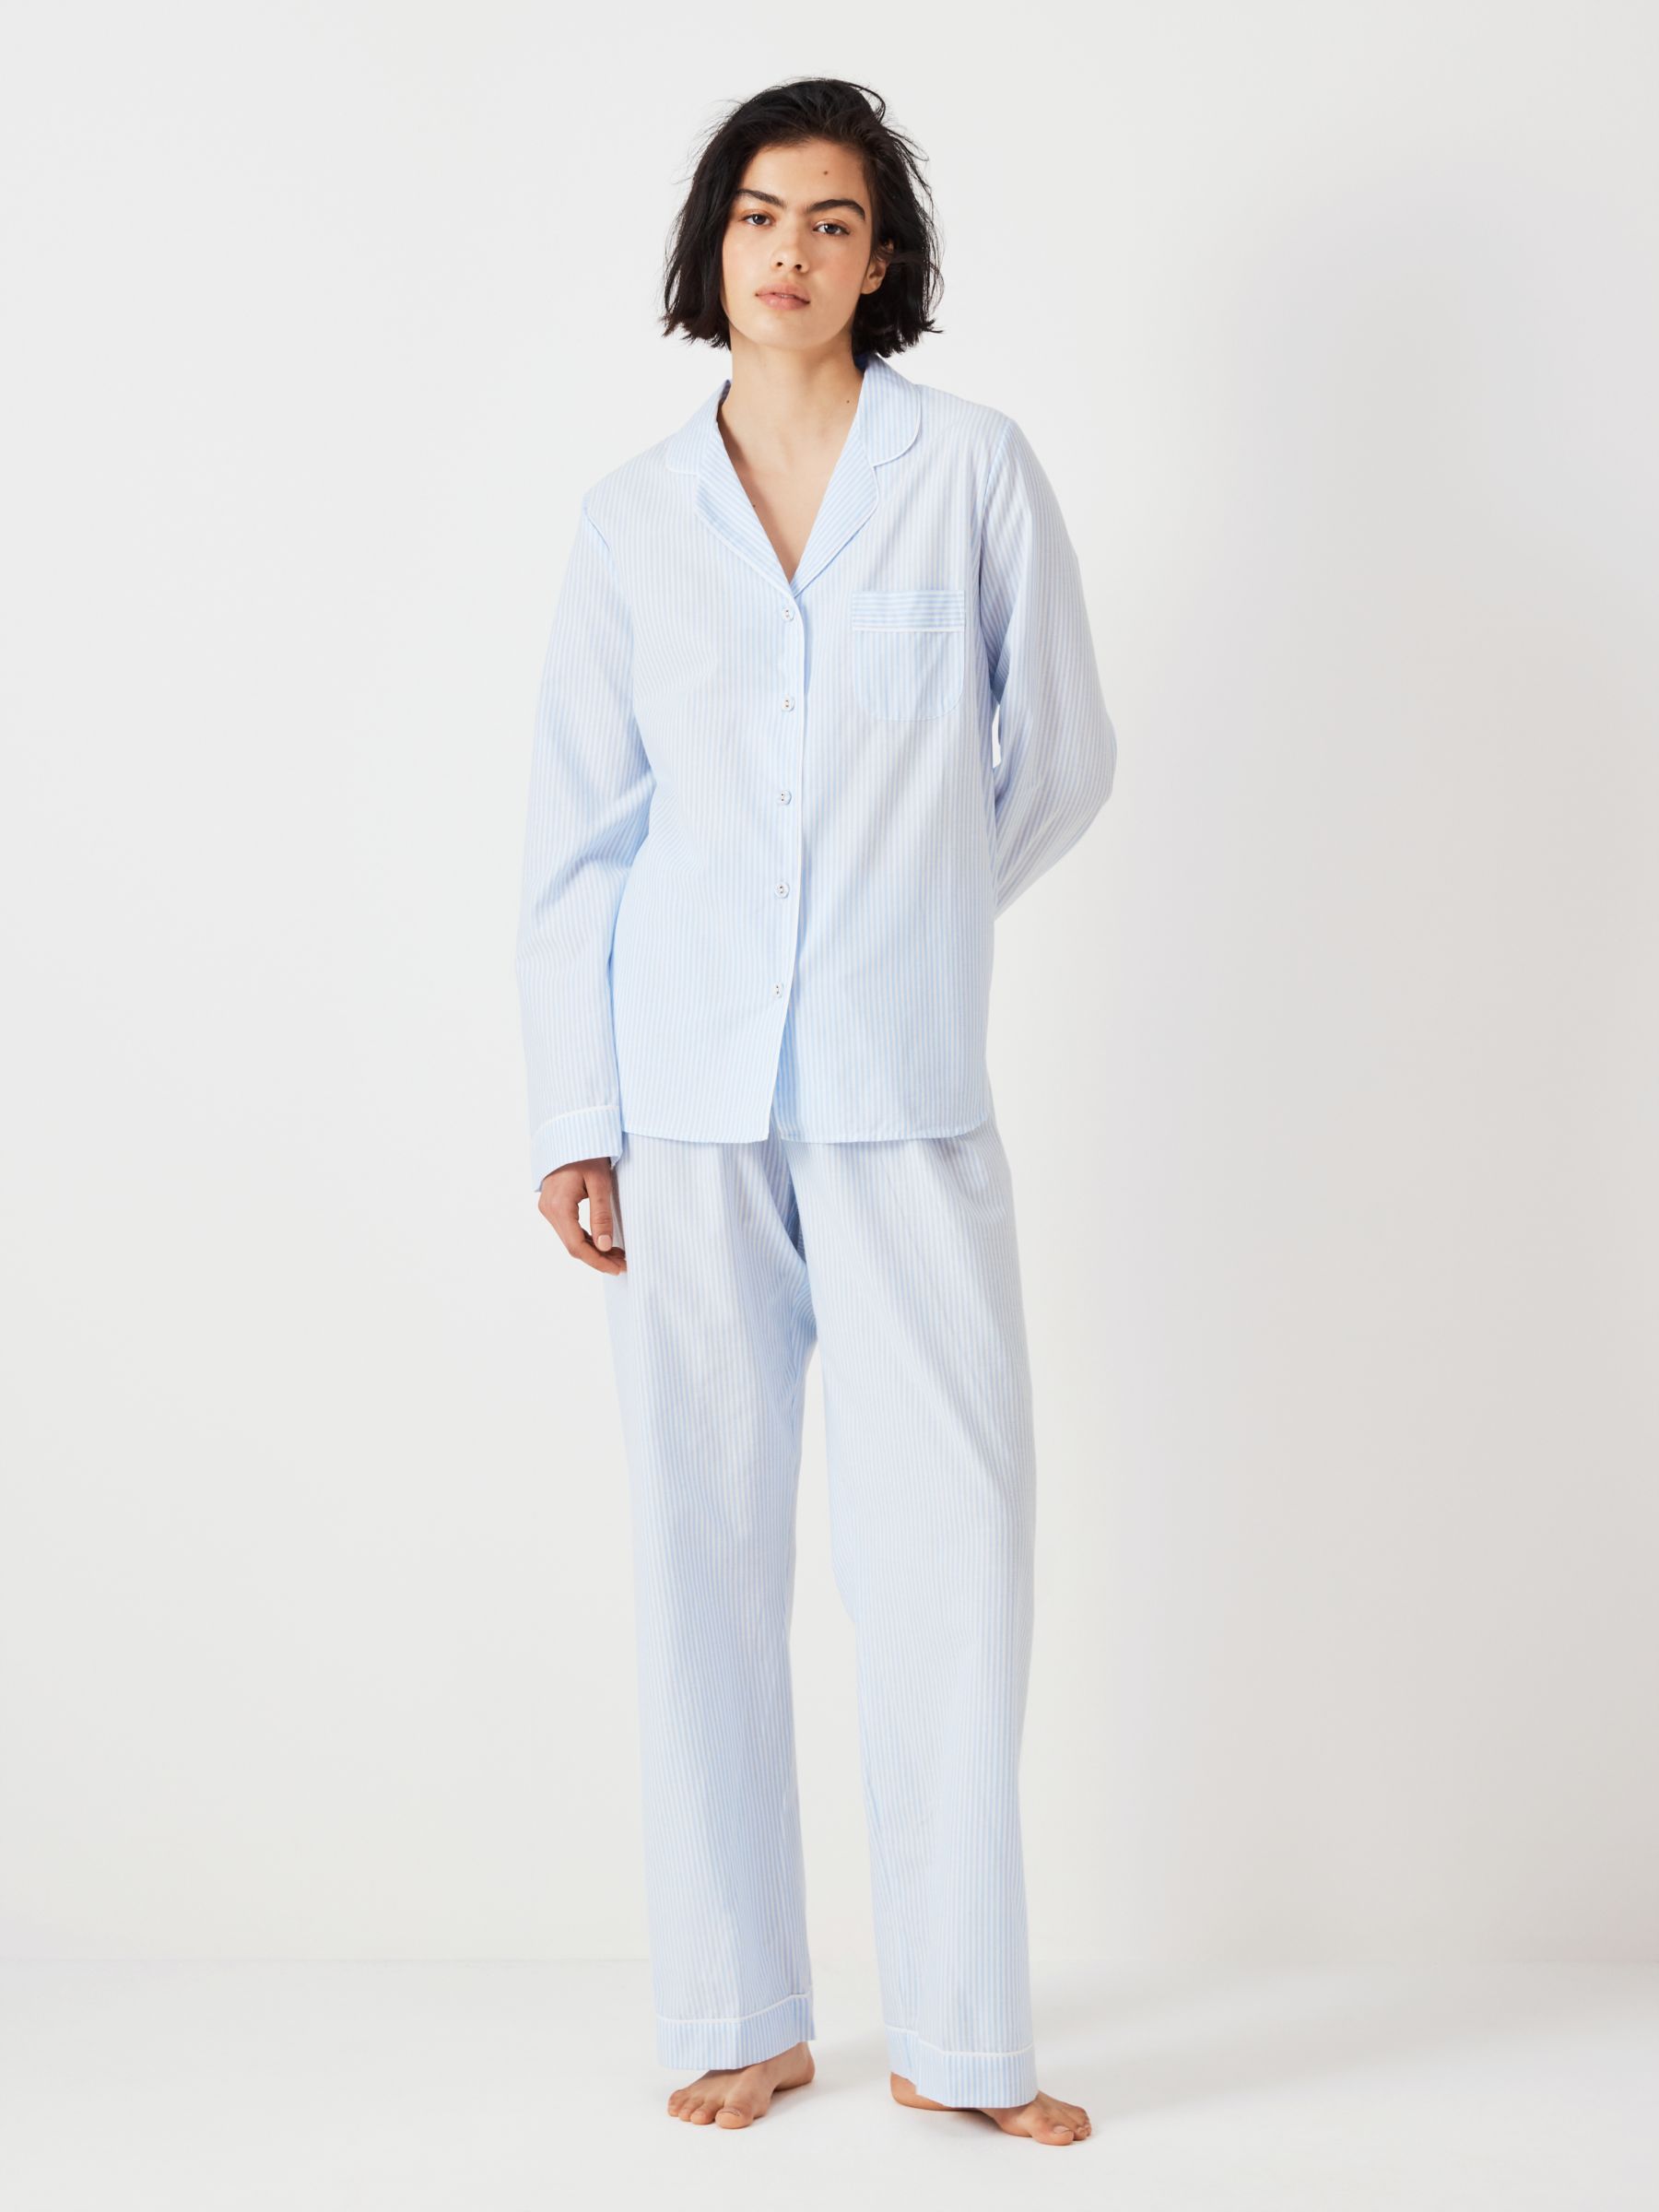 John Lewis Luna Stripe Pyjama Bottoms, White/Blue at John Lewis & Partners